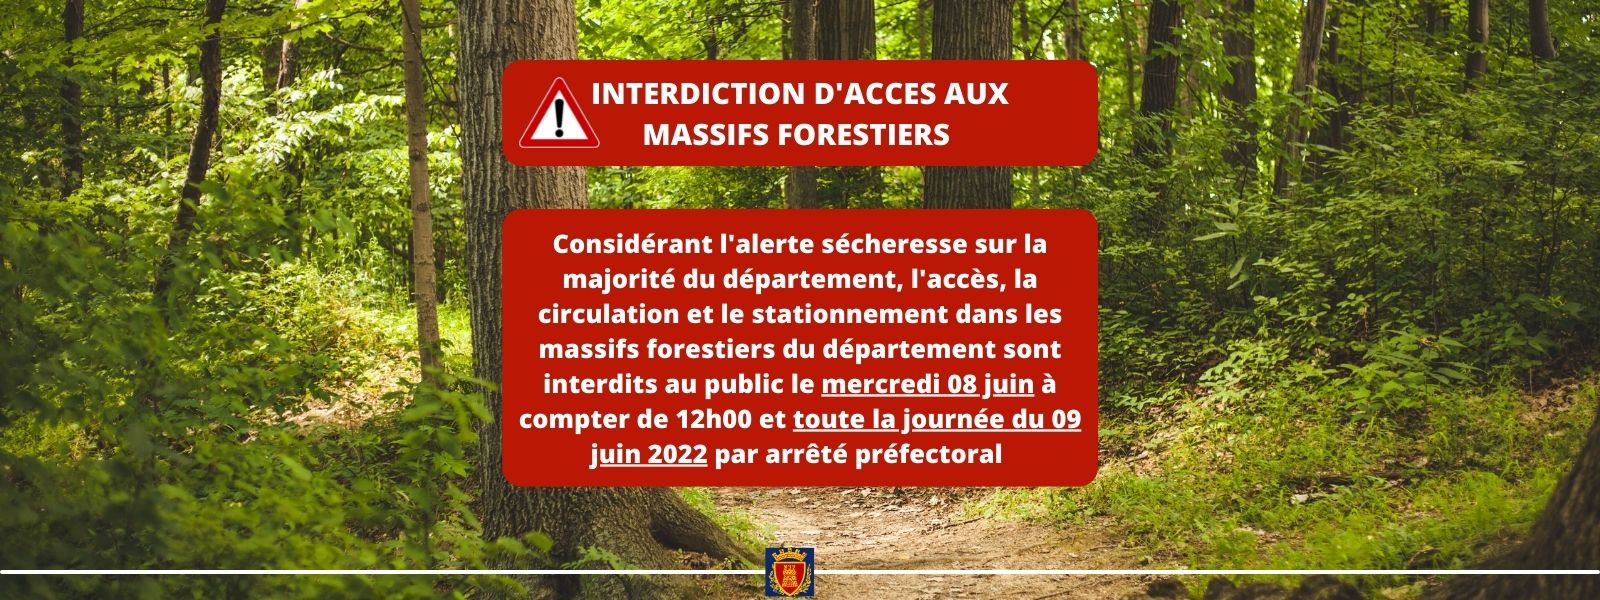 Mercredi 08 juin et jeudi 09 juin 2022 : Interdiction d'accès aux massifs forestiers 